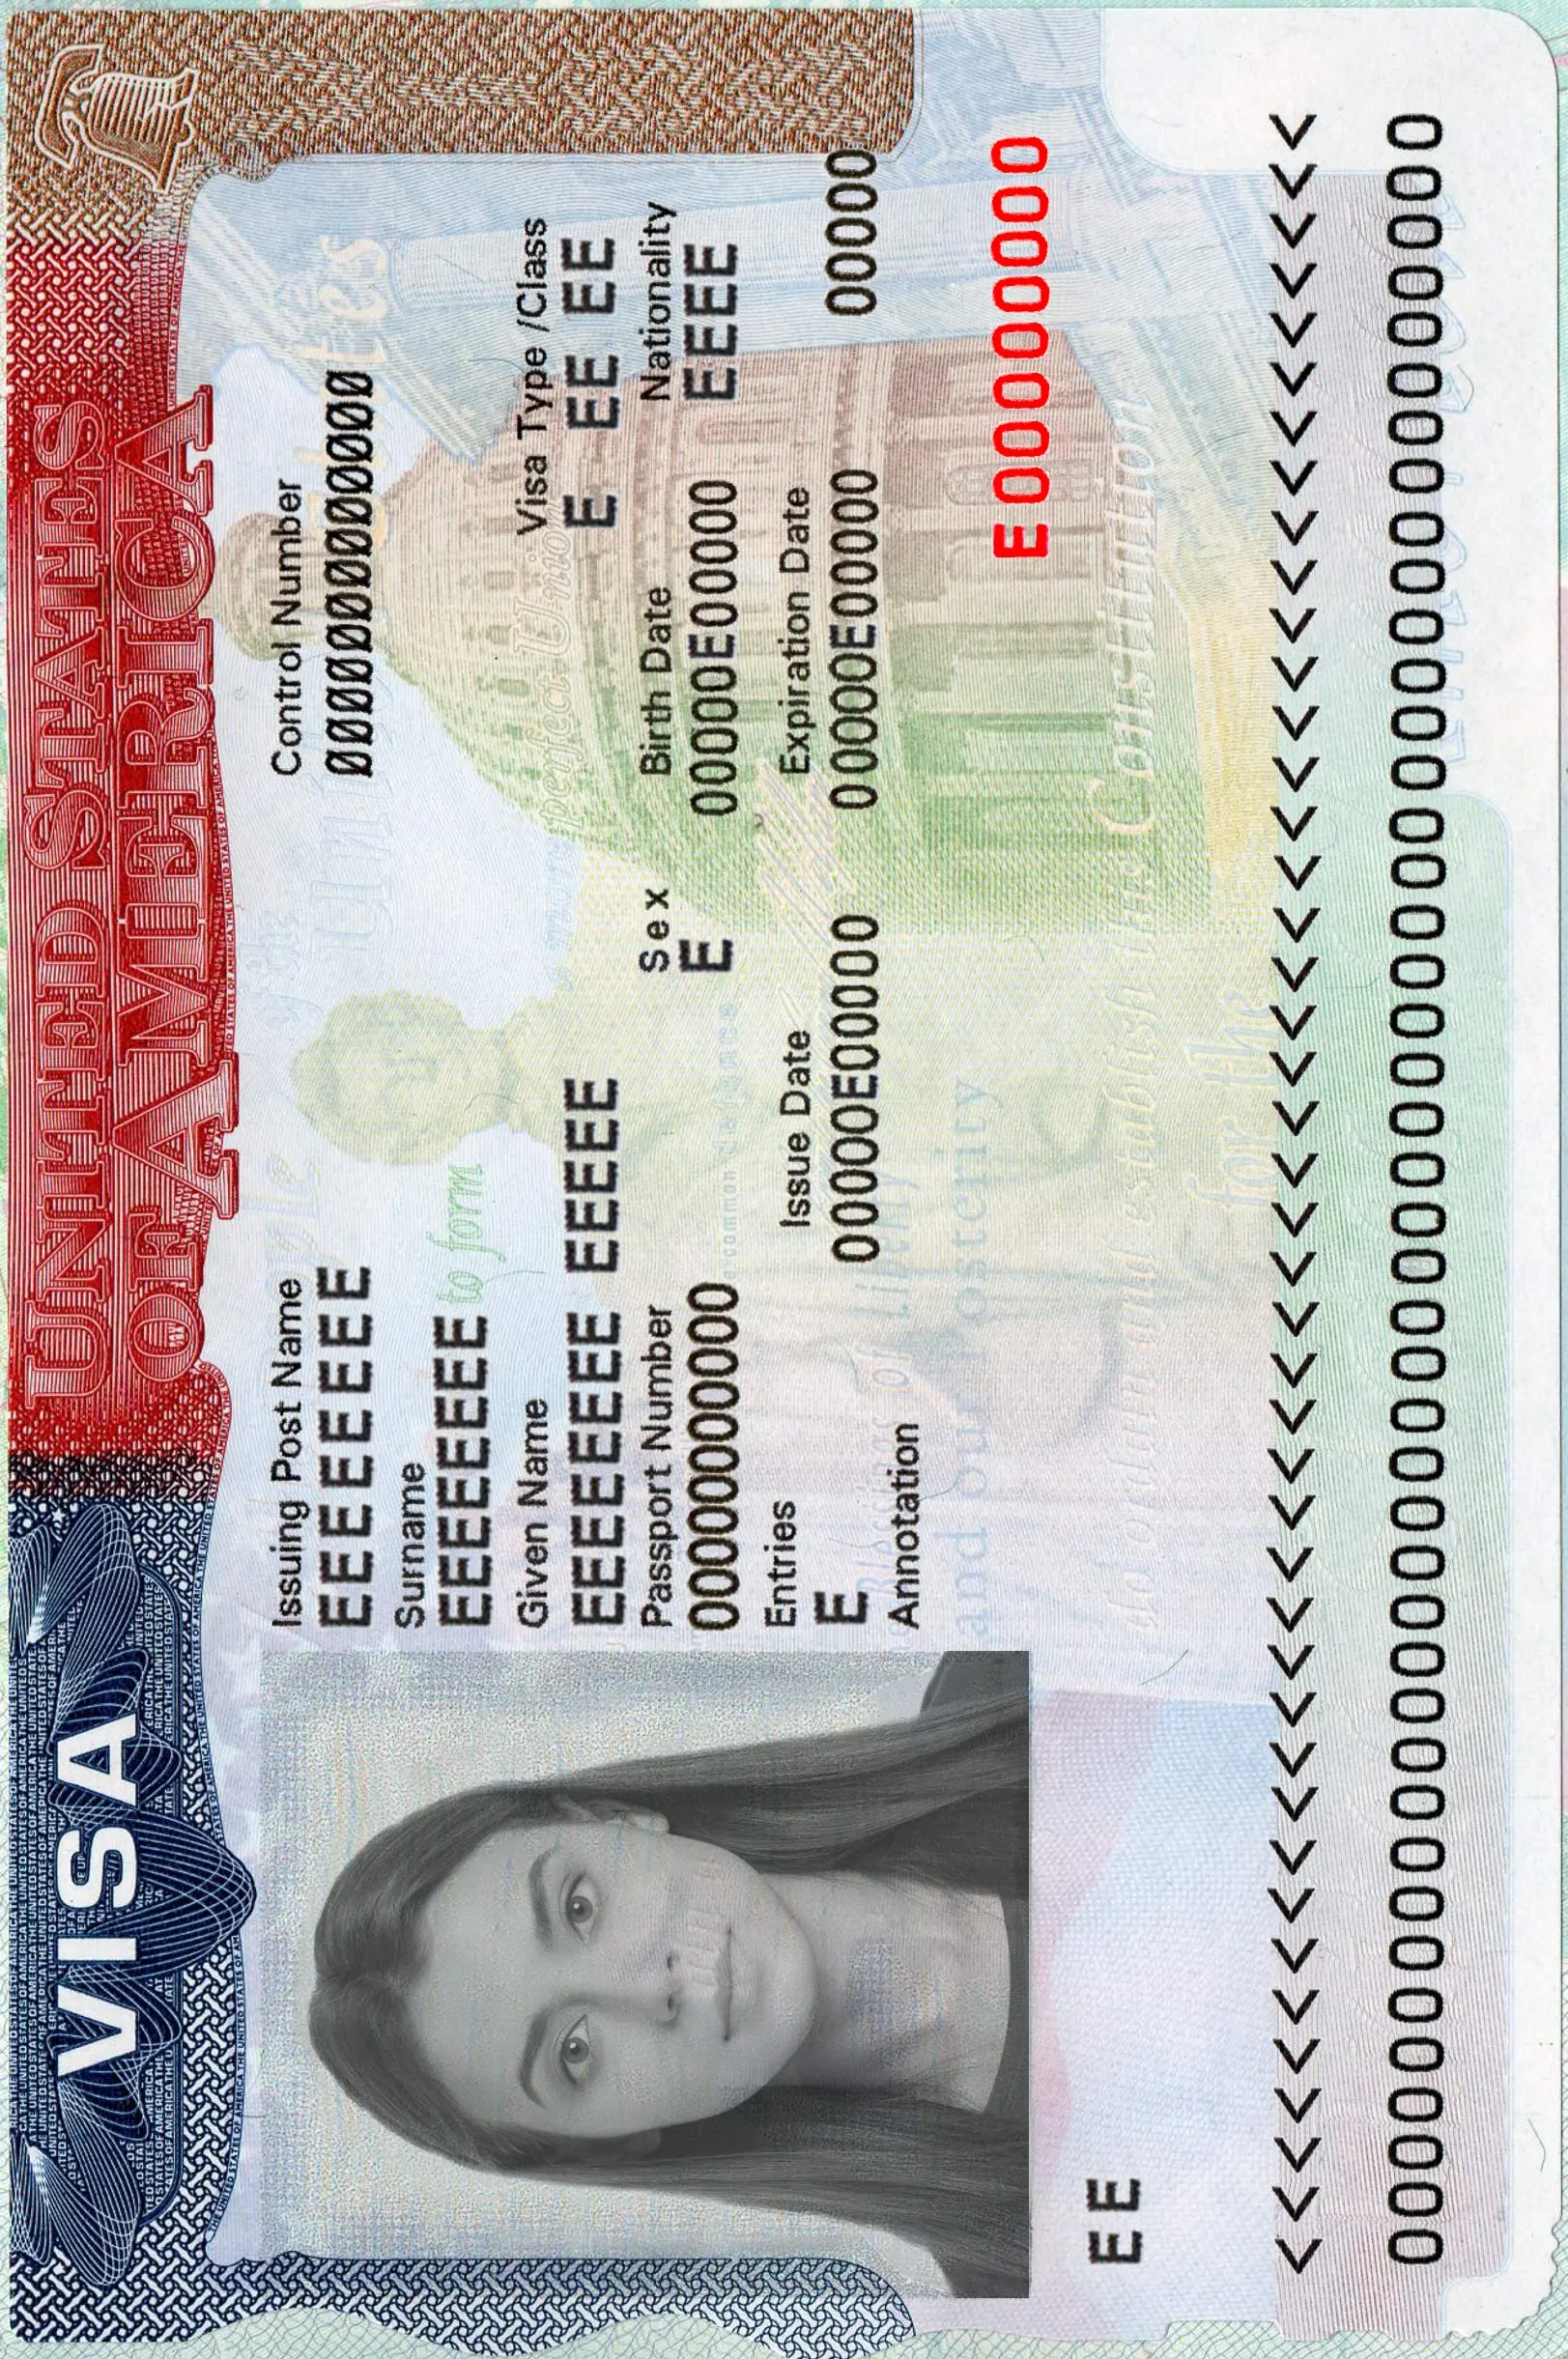 Foto del visado para EE.UU.